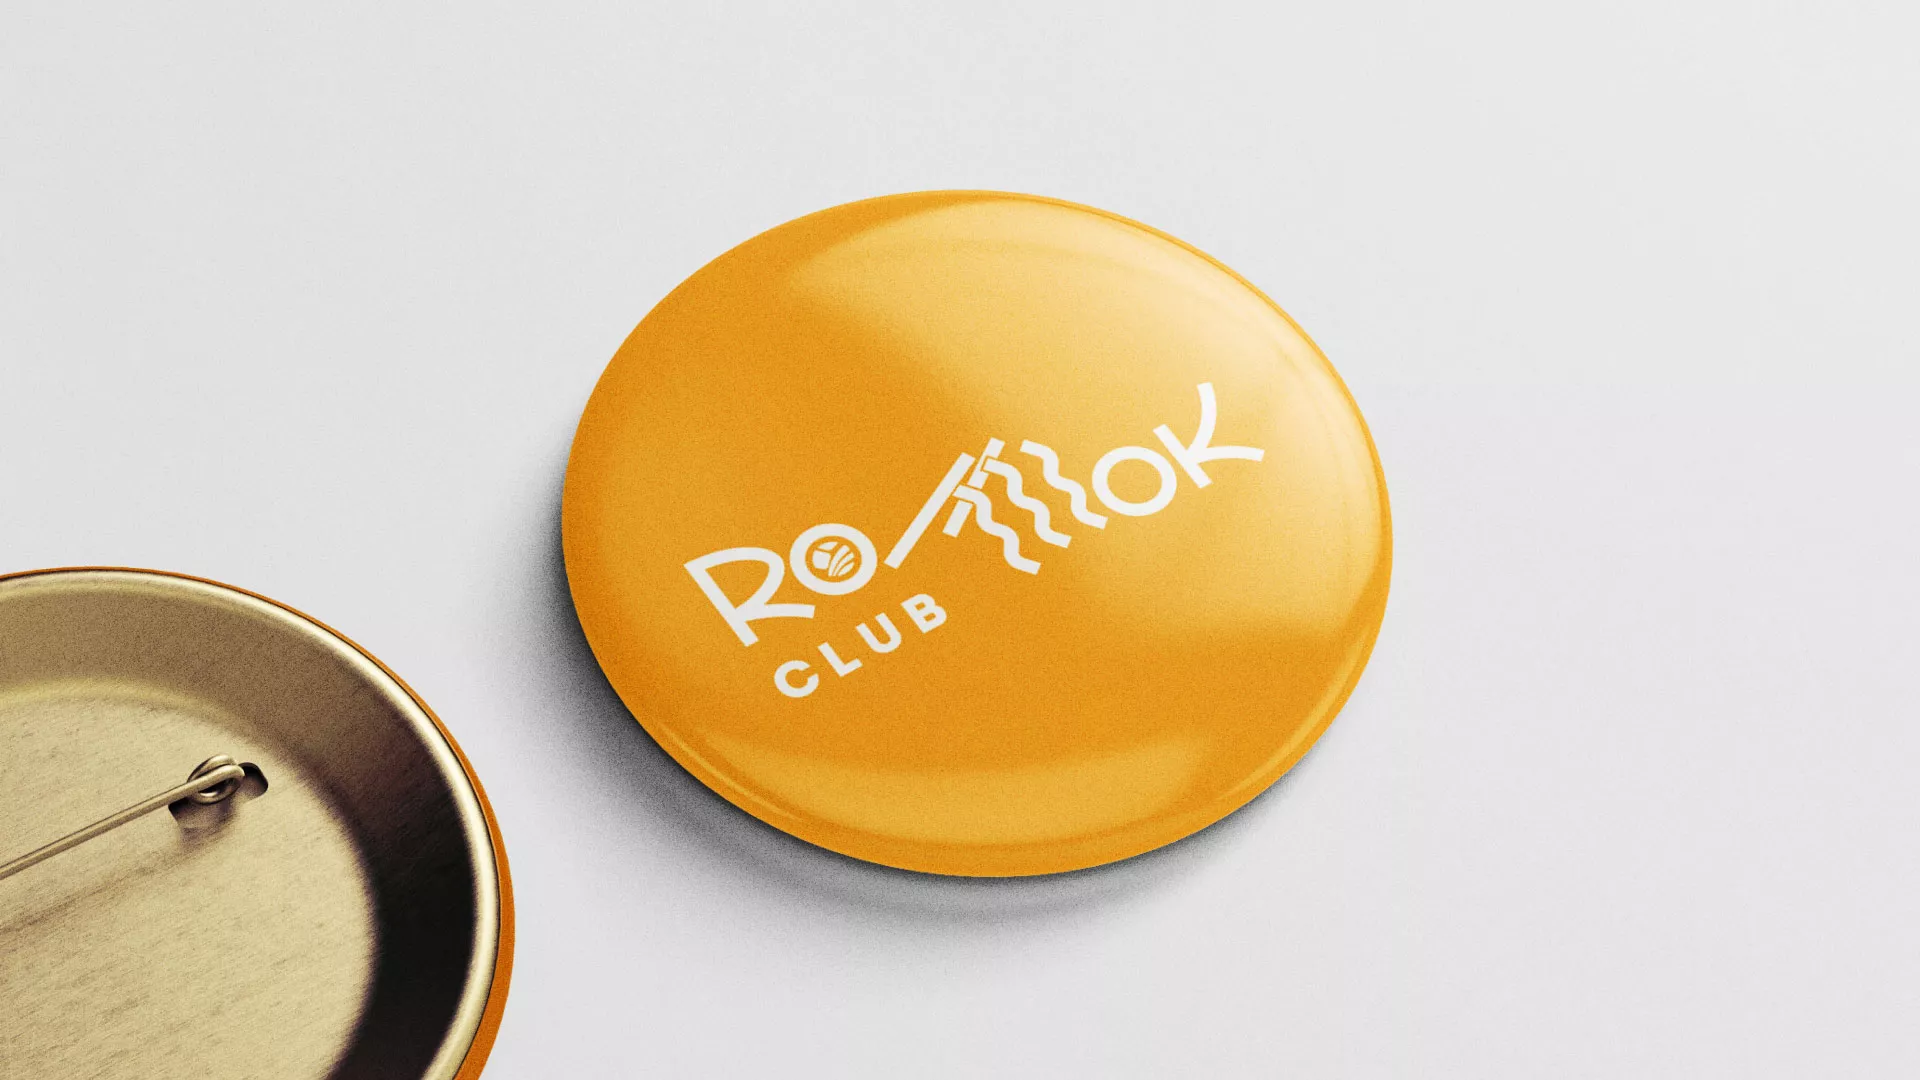 Создание логотипа суши-бара «Roll Wok Club» в Шилке